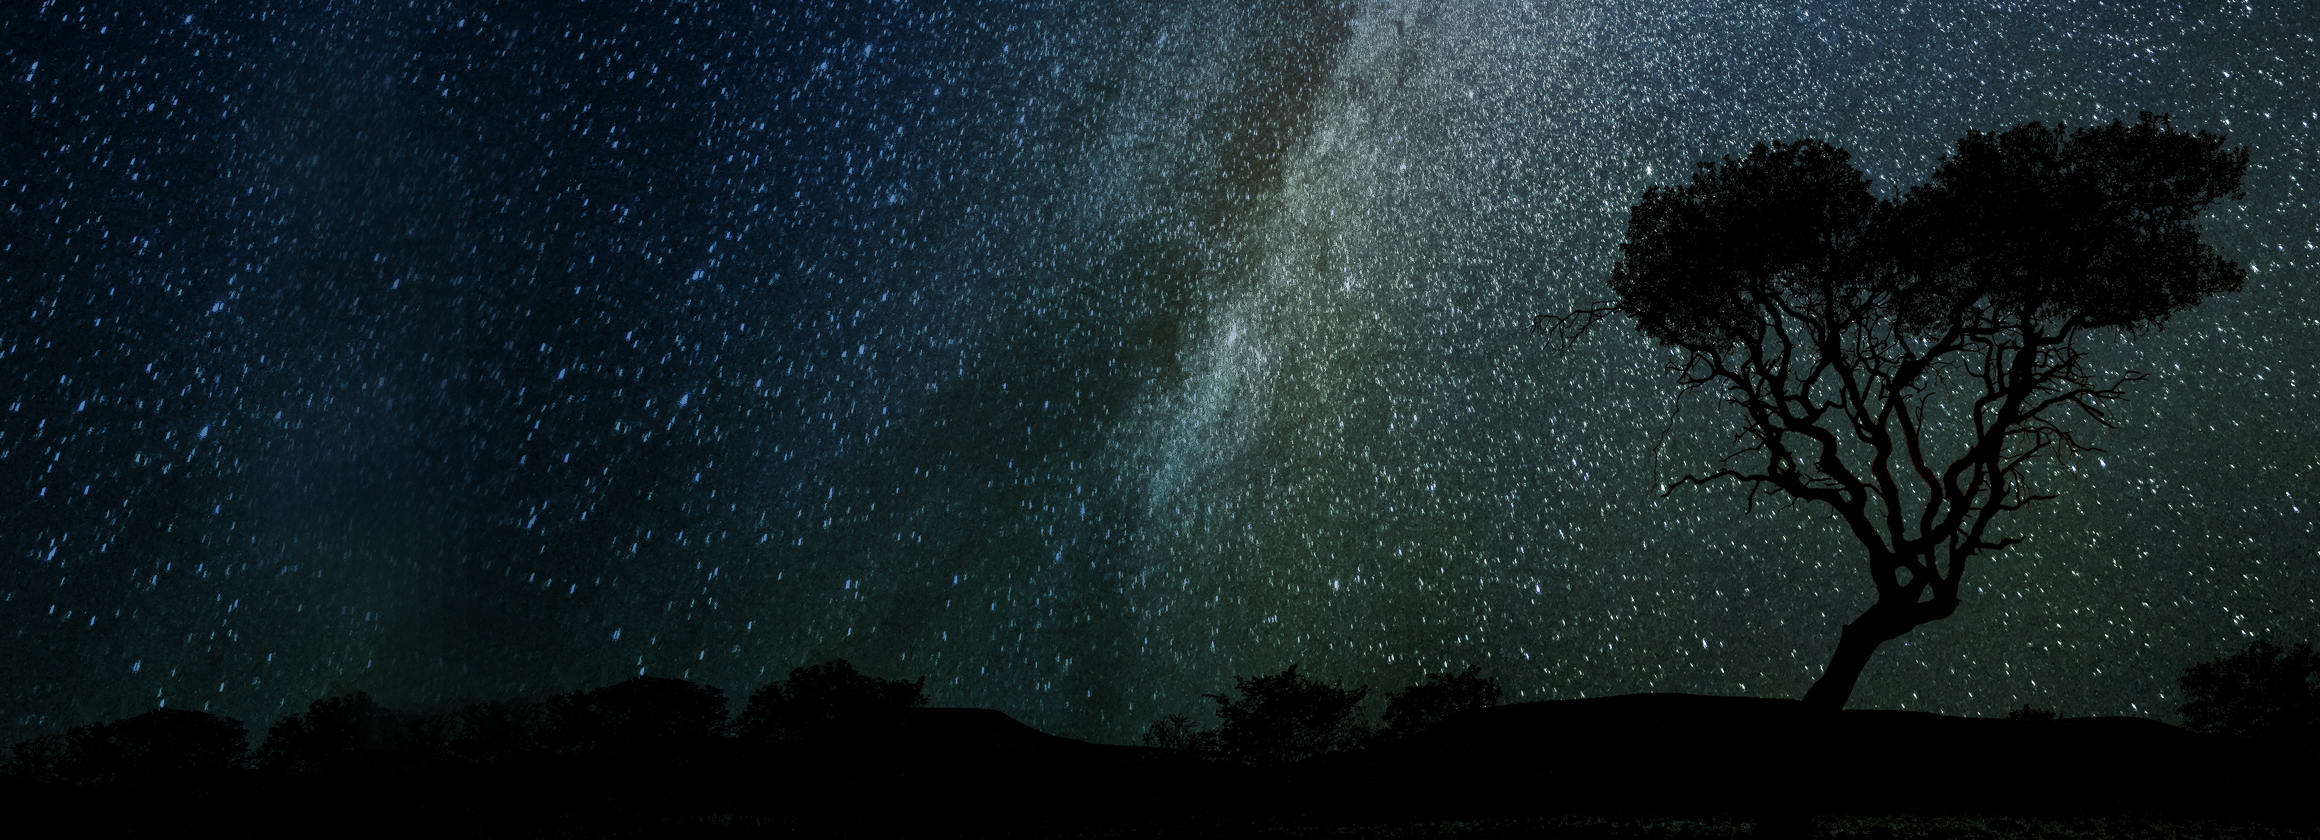 Das Foto zeigt einen einsamen Baum bei Nacht, während der Himmel von unserer Milchstraße erleuchtet wird.